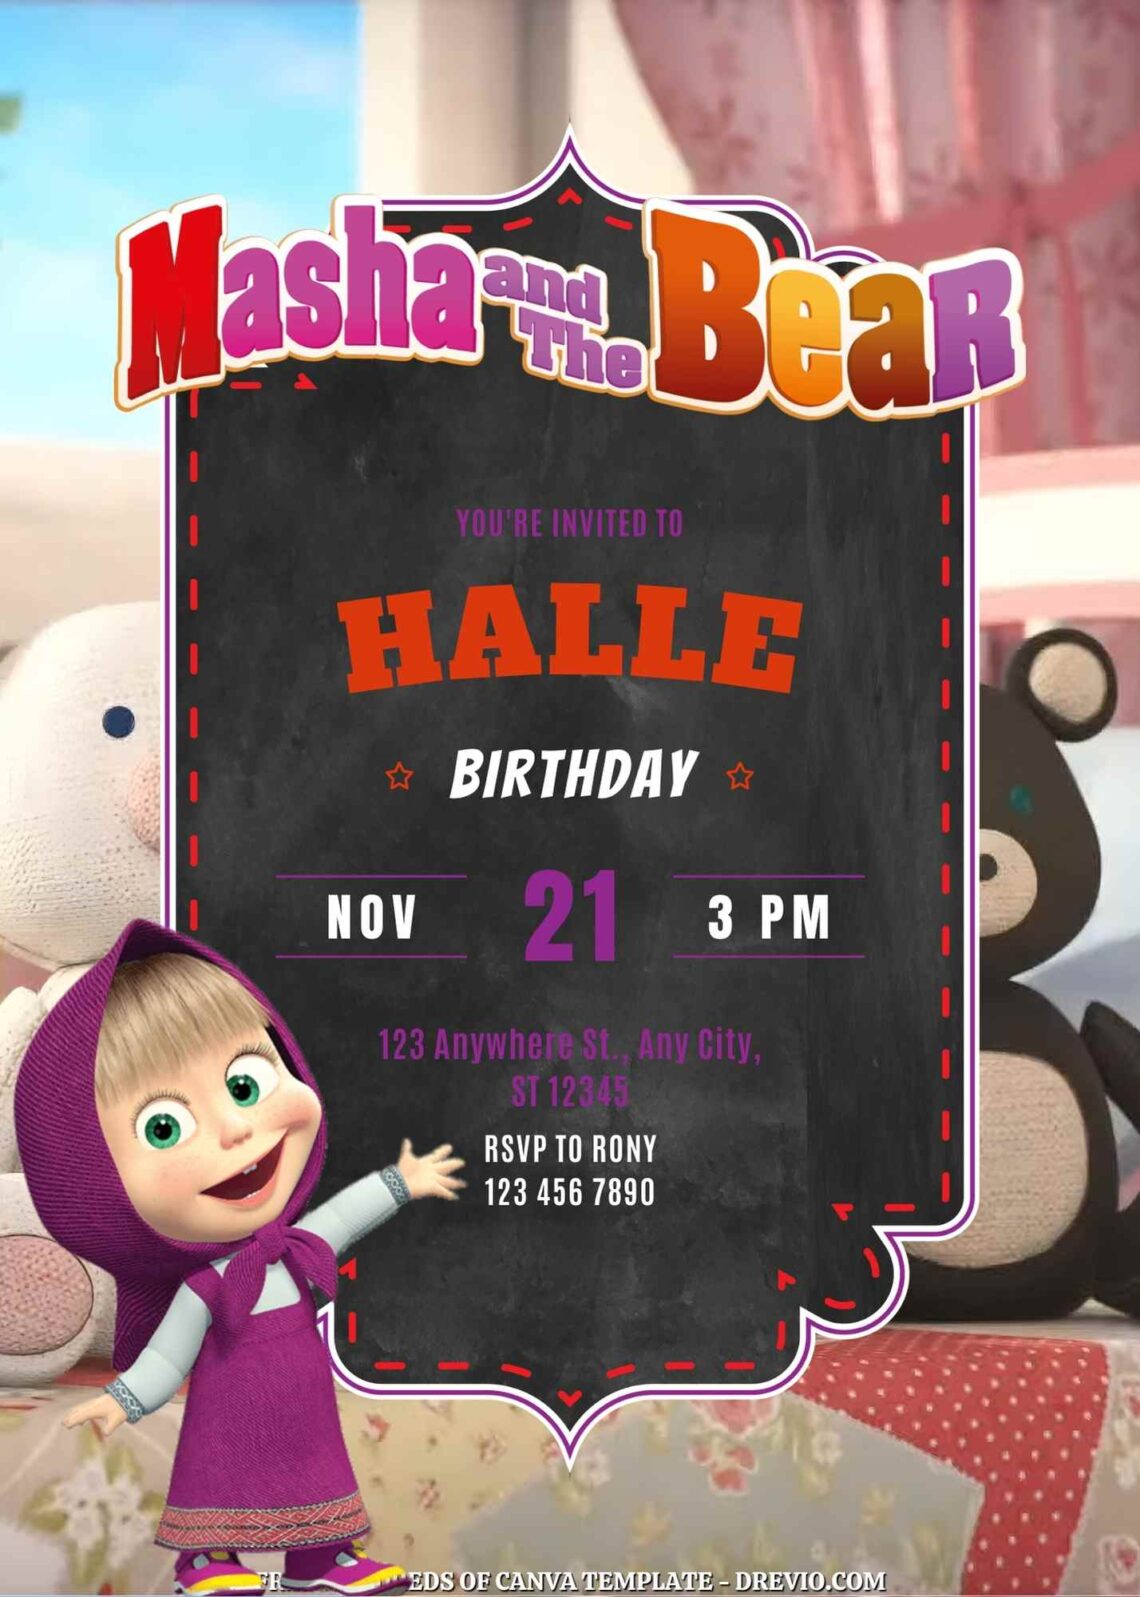 Free Masha and the Bear Birthday Invitations